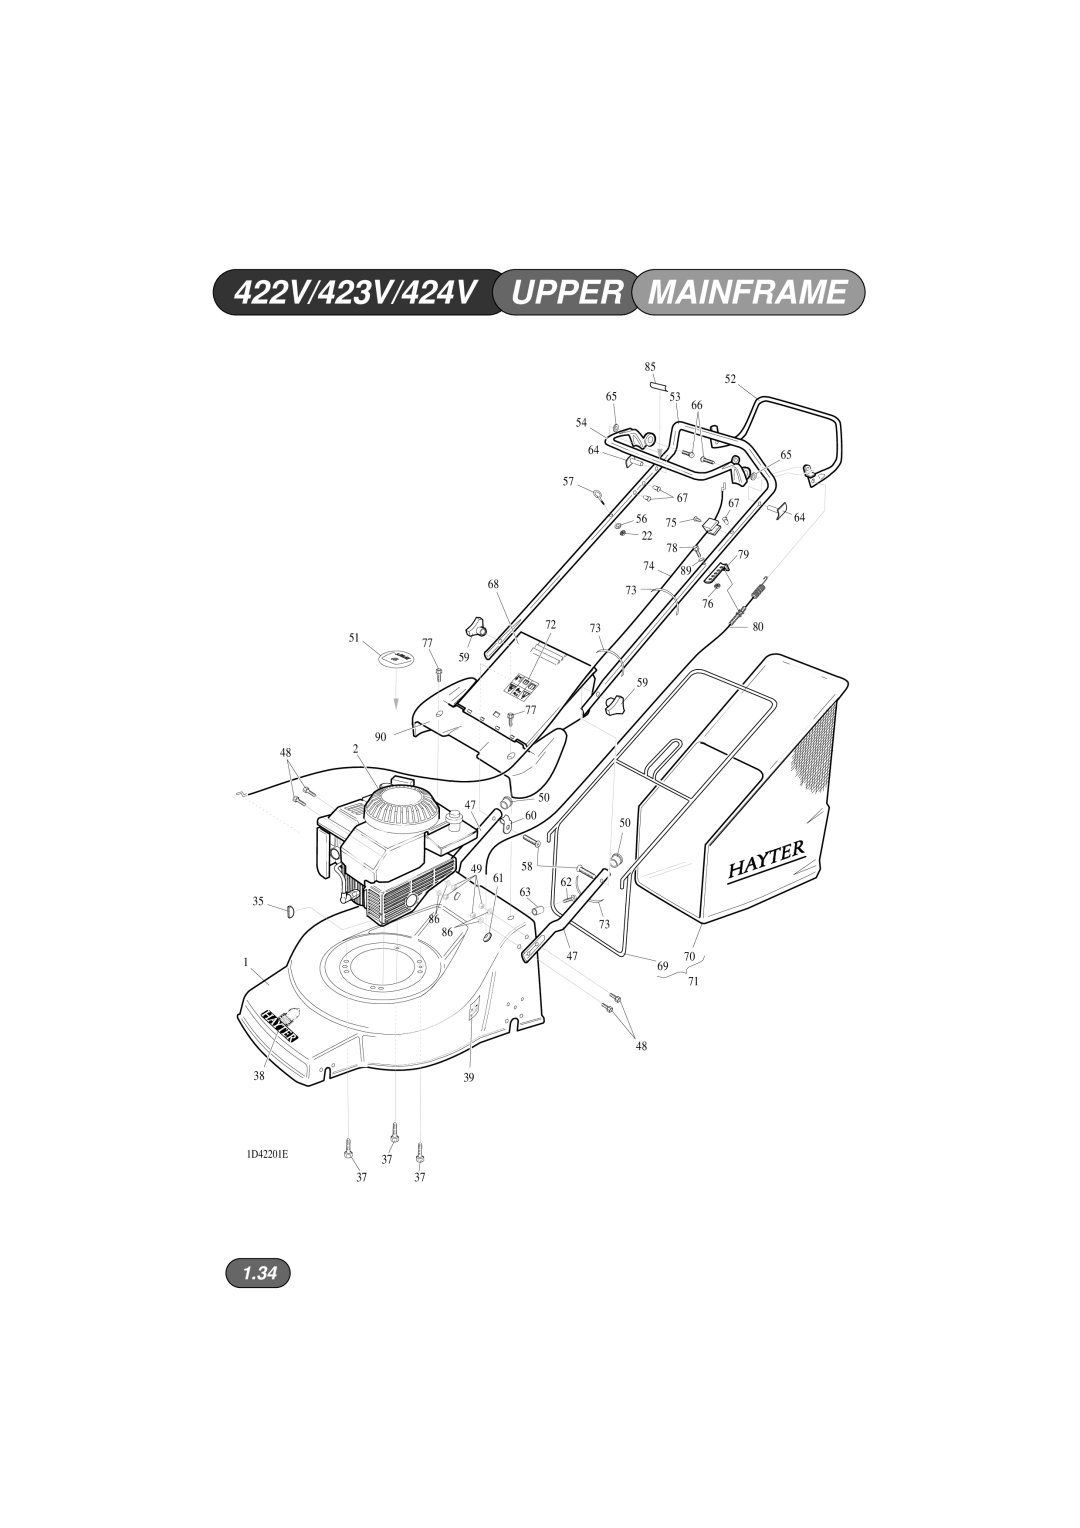 Hayter Mowers manual 422V/423V/424V UPPER MAINFRAME, 1.34 